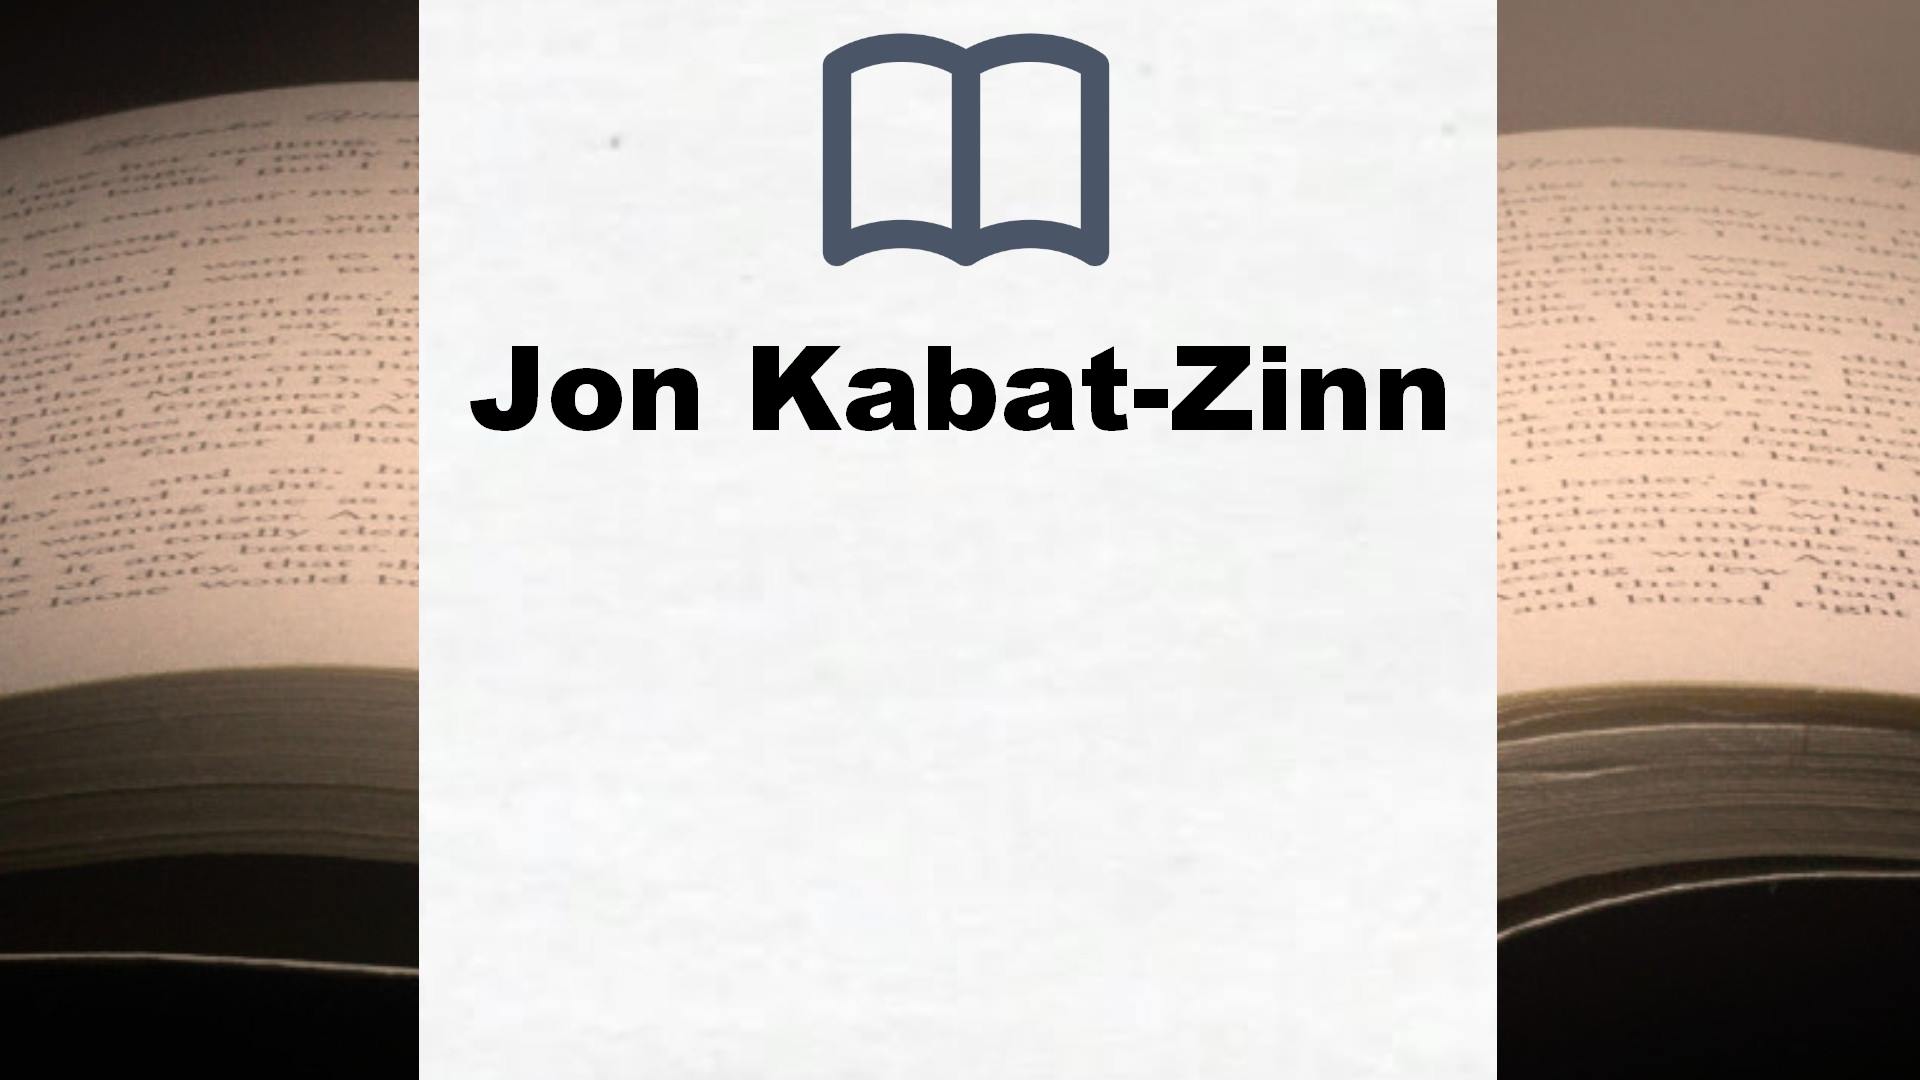 Libros Jon Kabat-Zinn